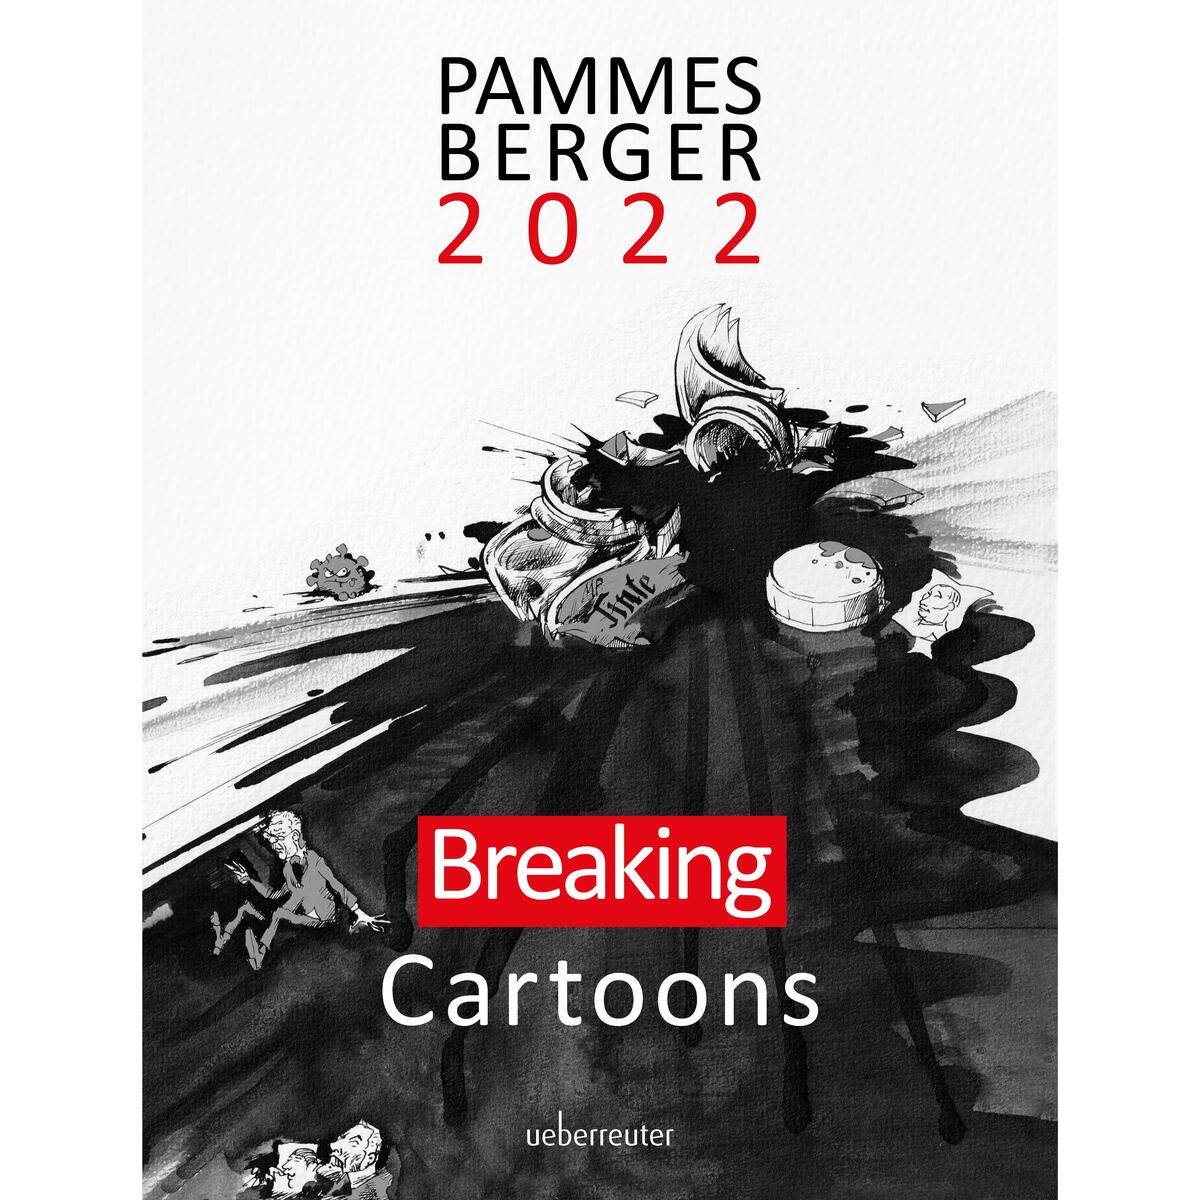 Pammesberger 2022 von Ueberreuter, Carl Verlag